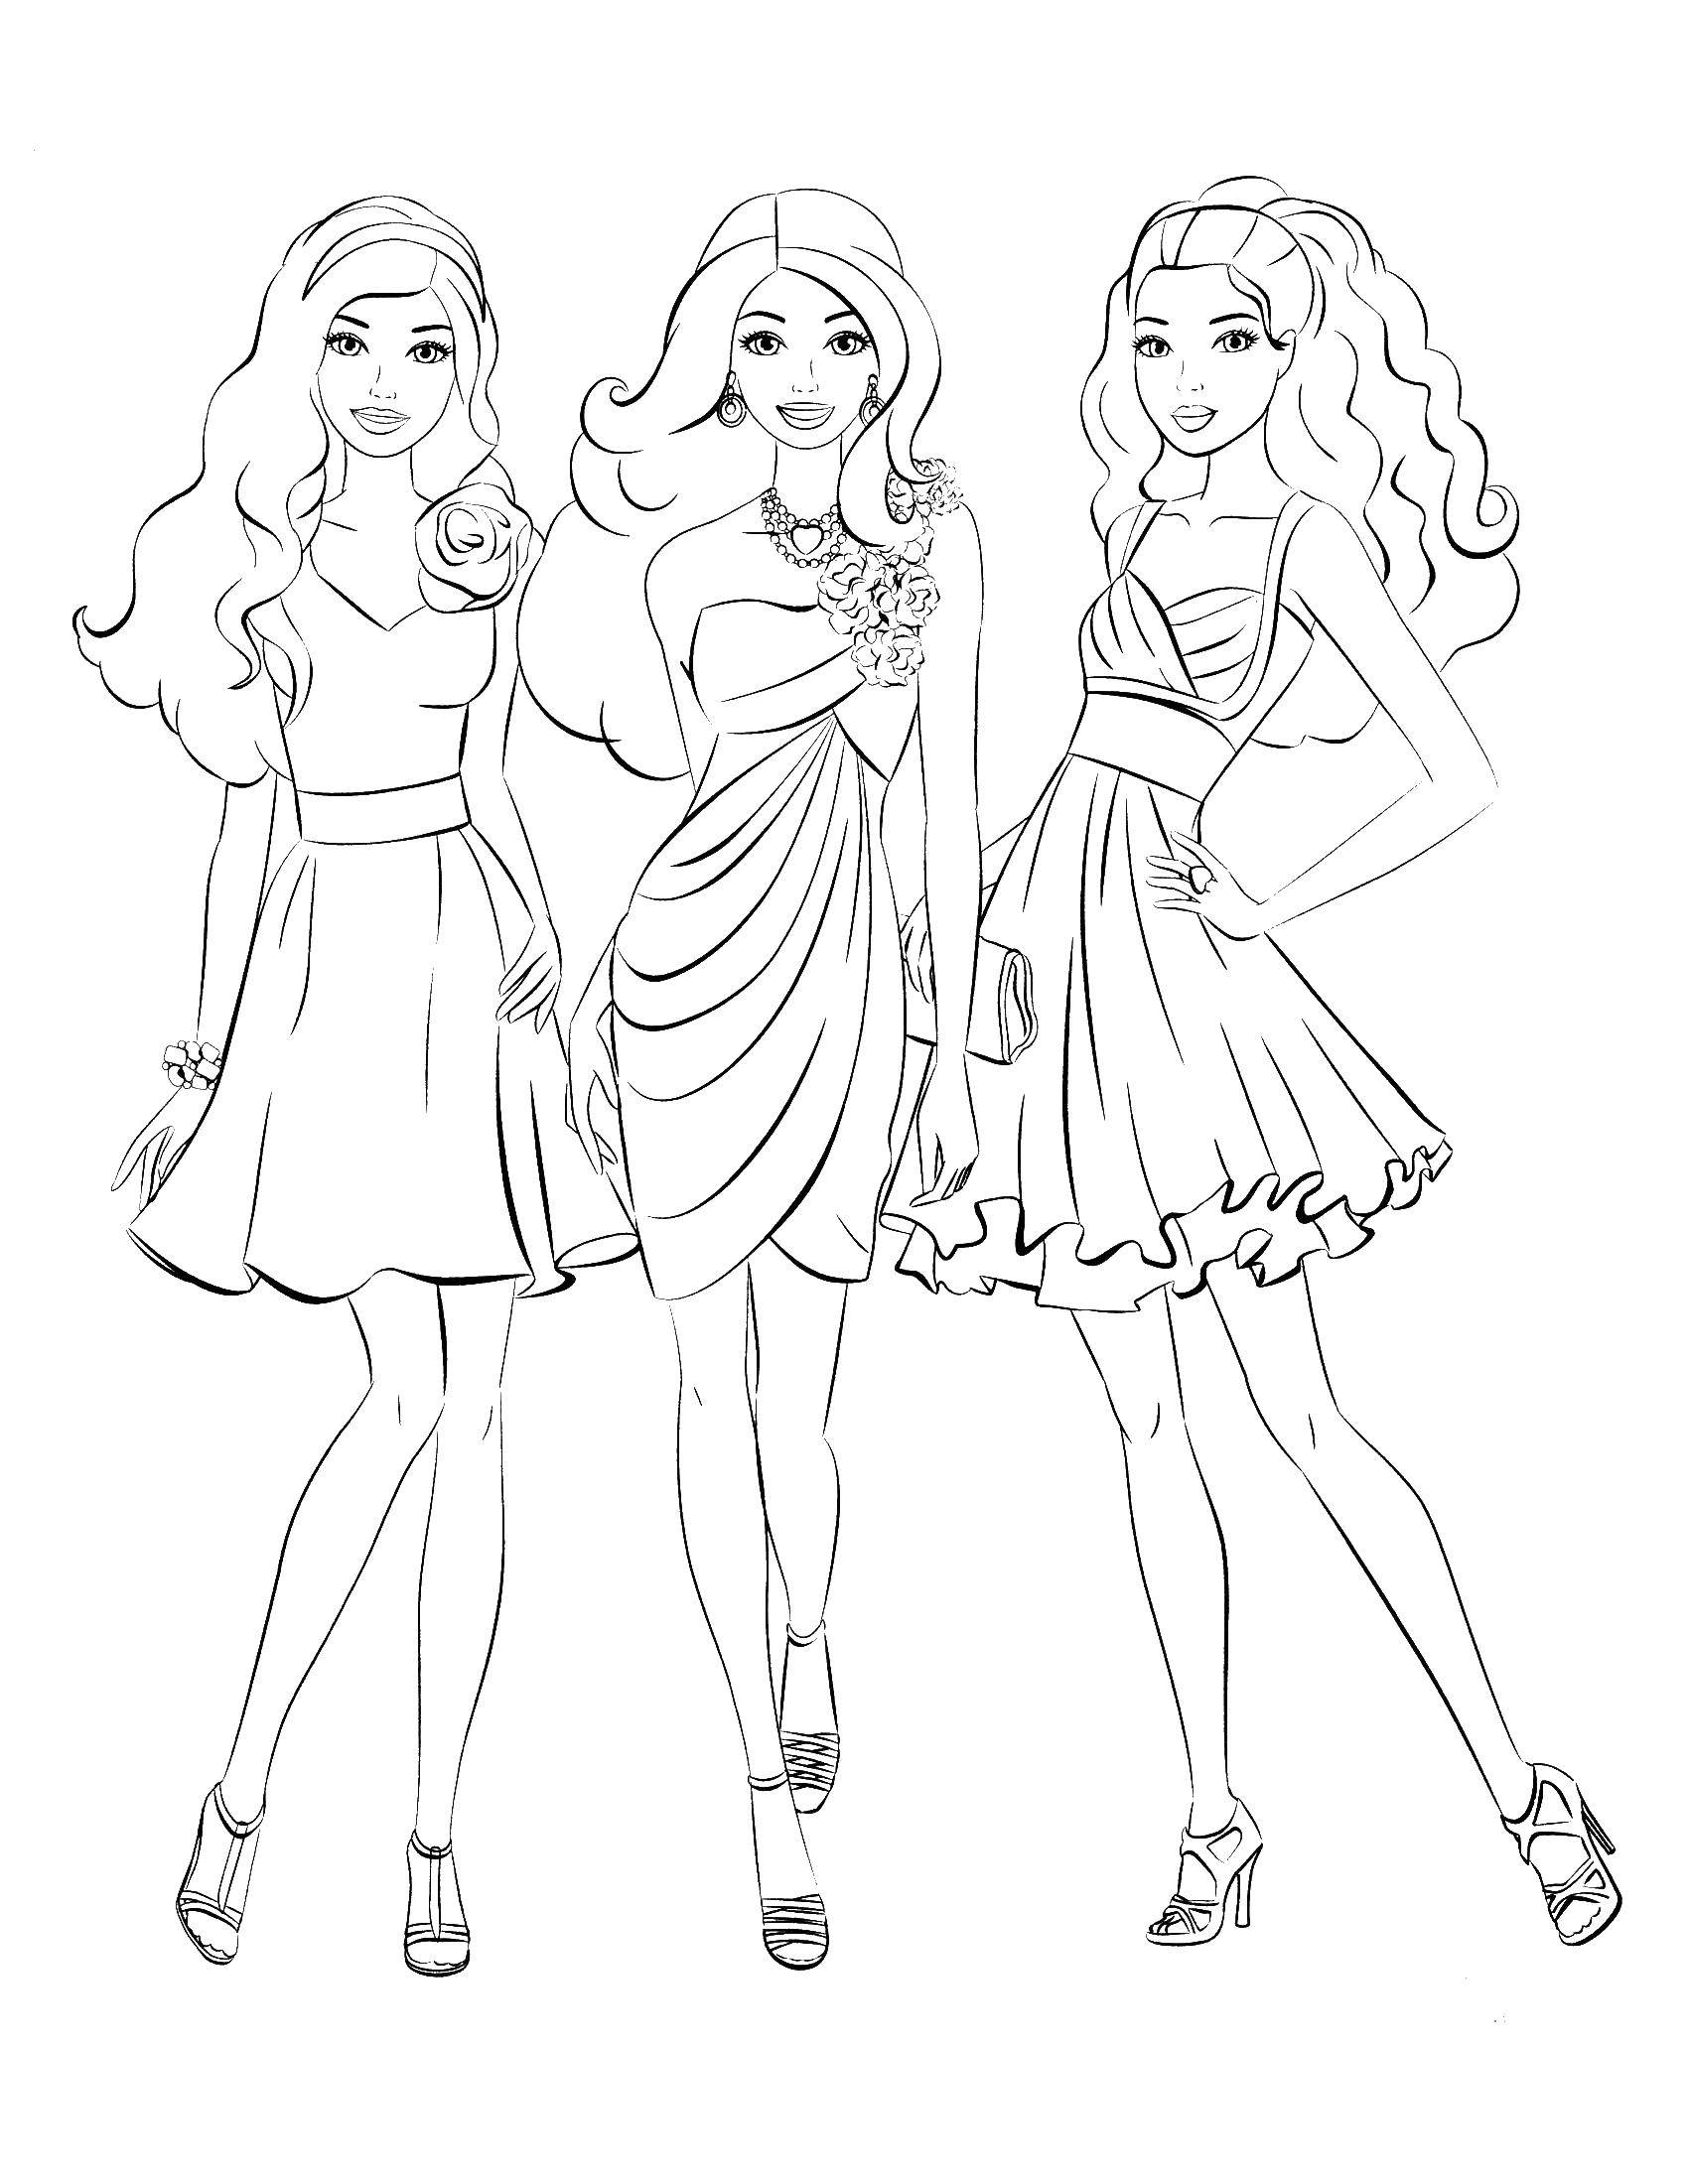 Опис: розмальовки  Три барбі в красивих сукнях. Категорія: Барбі. Теги:  барбі, дівчатка, ляльки.